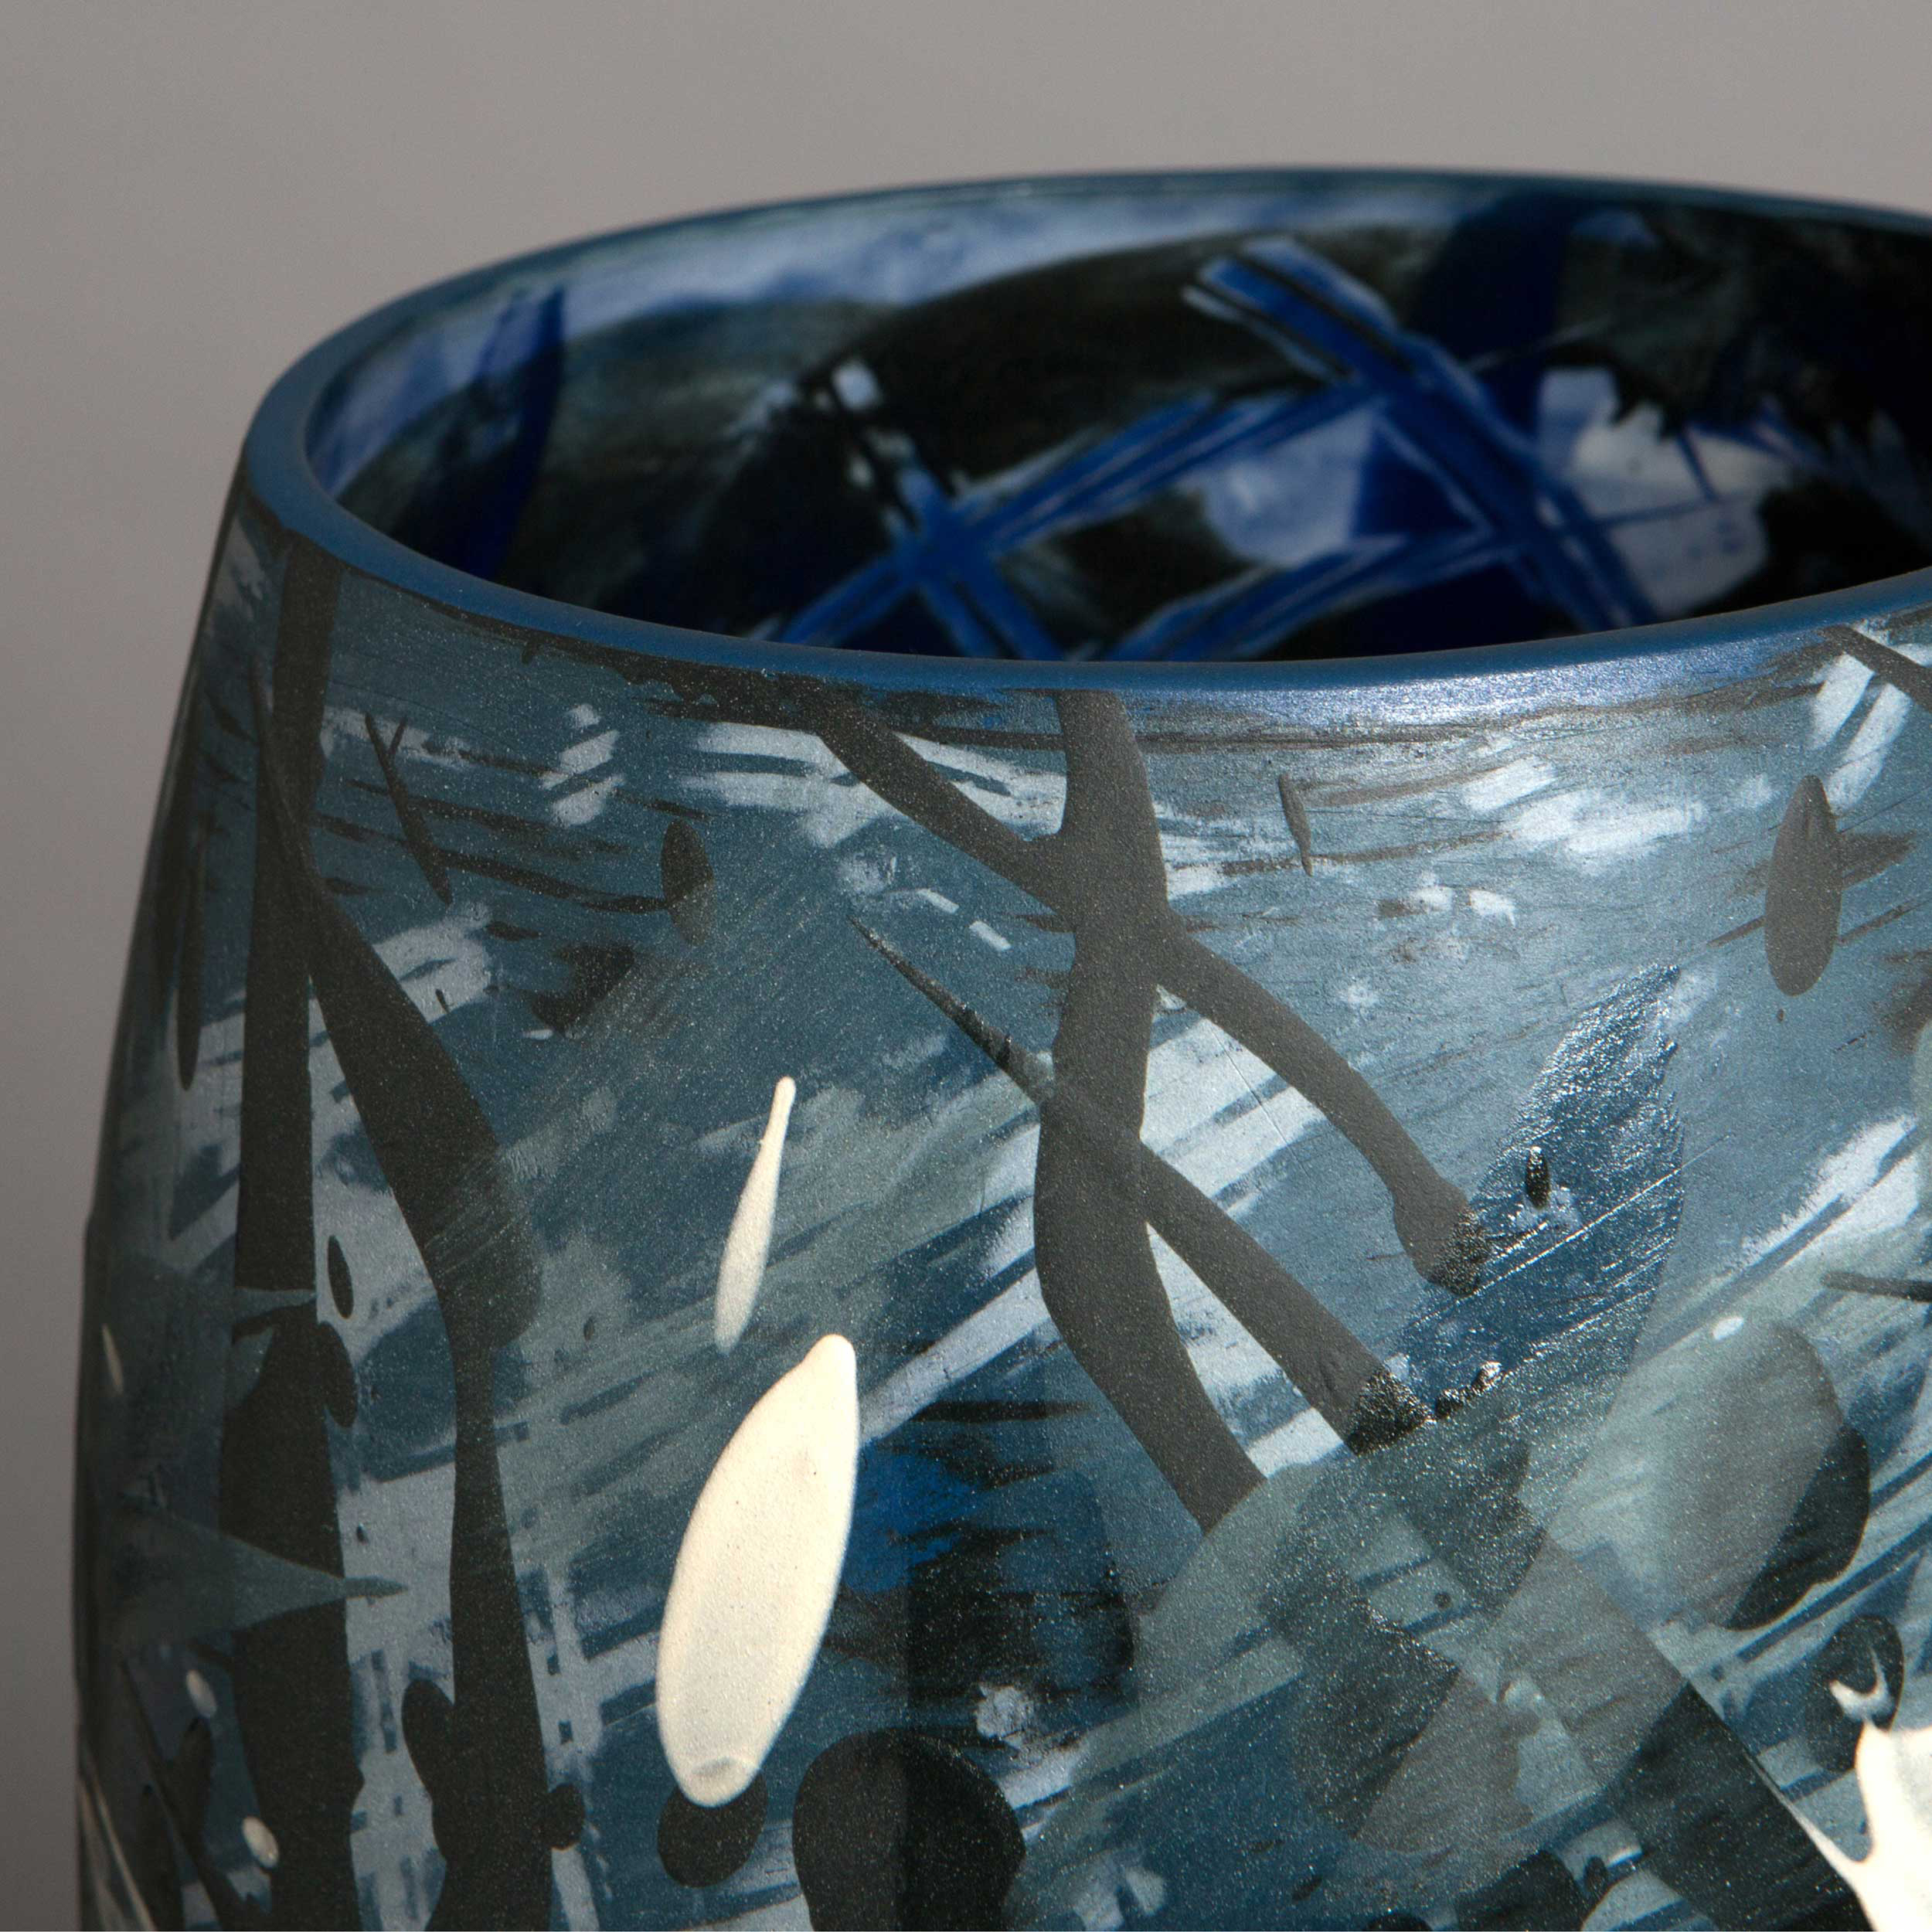 Splashing Waves Ceramic Vase Detail by Rowena Gilbert